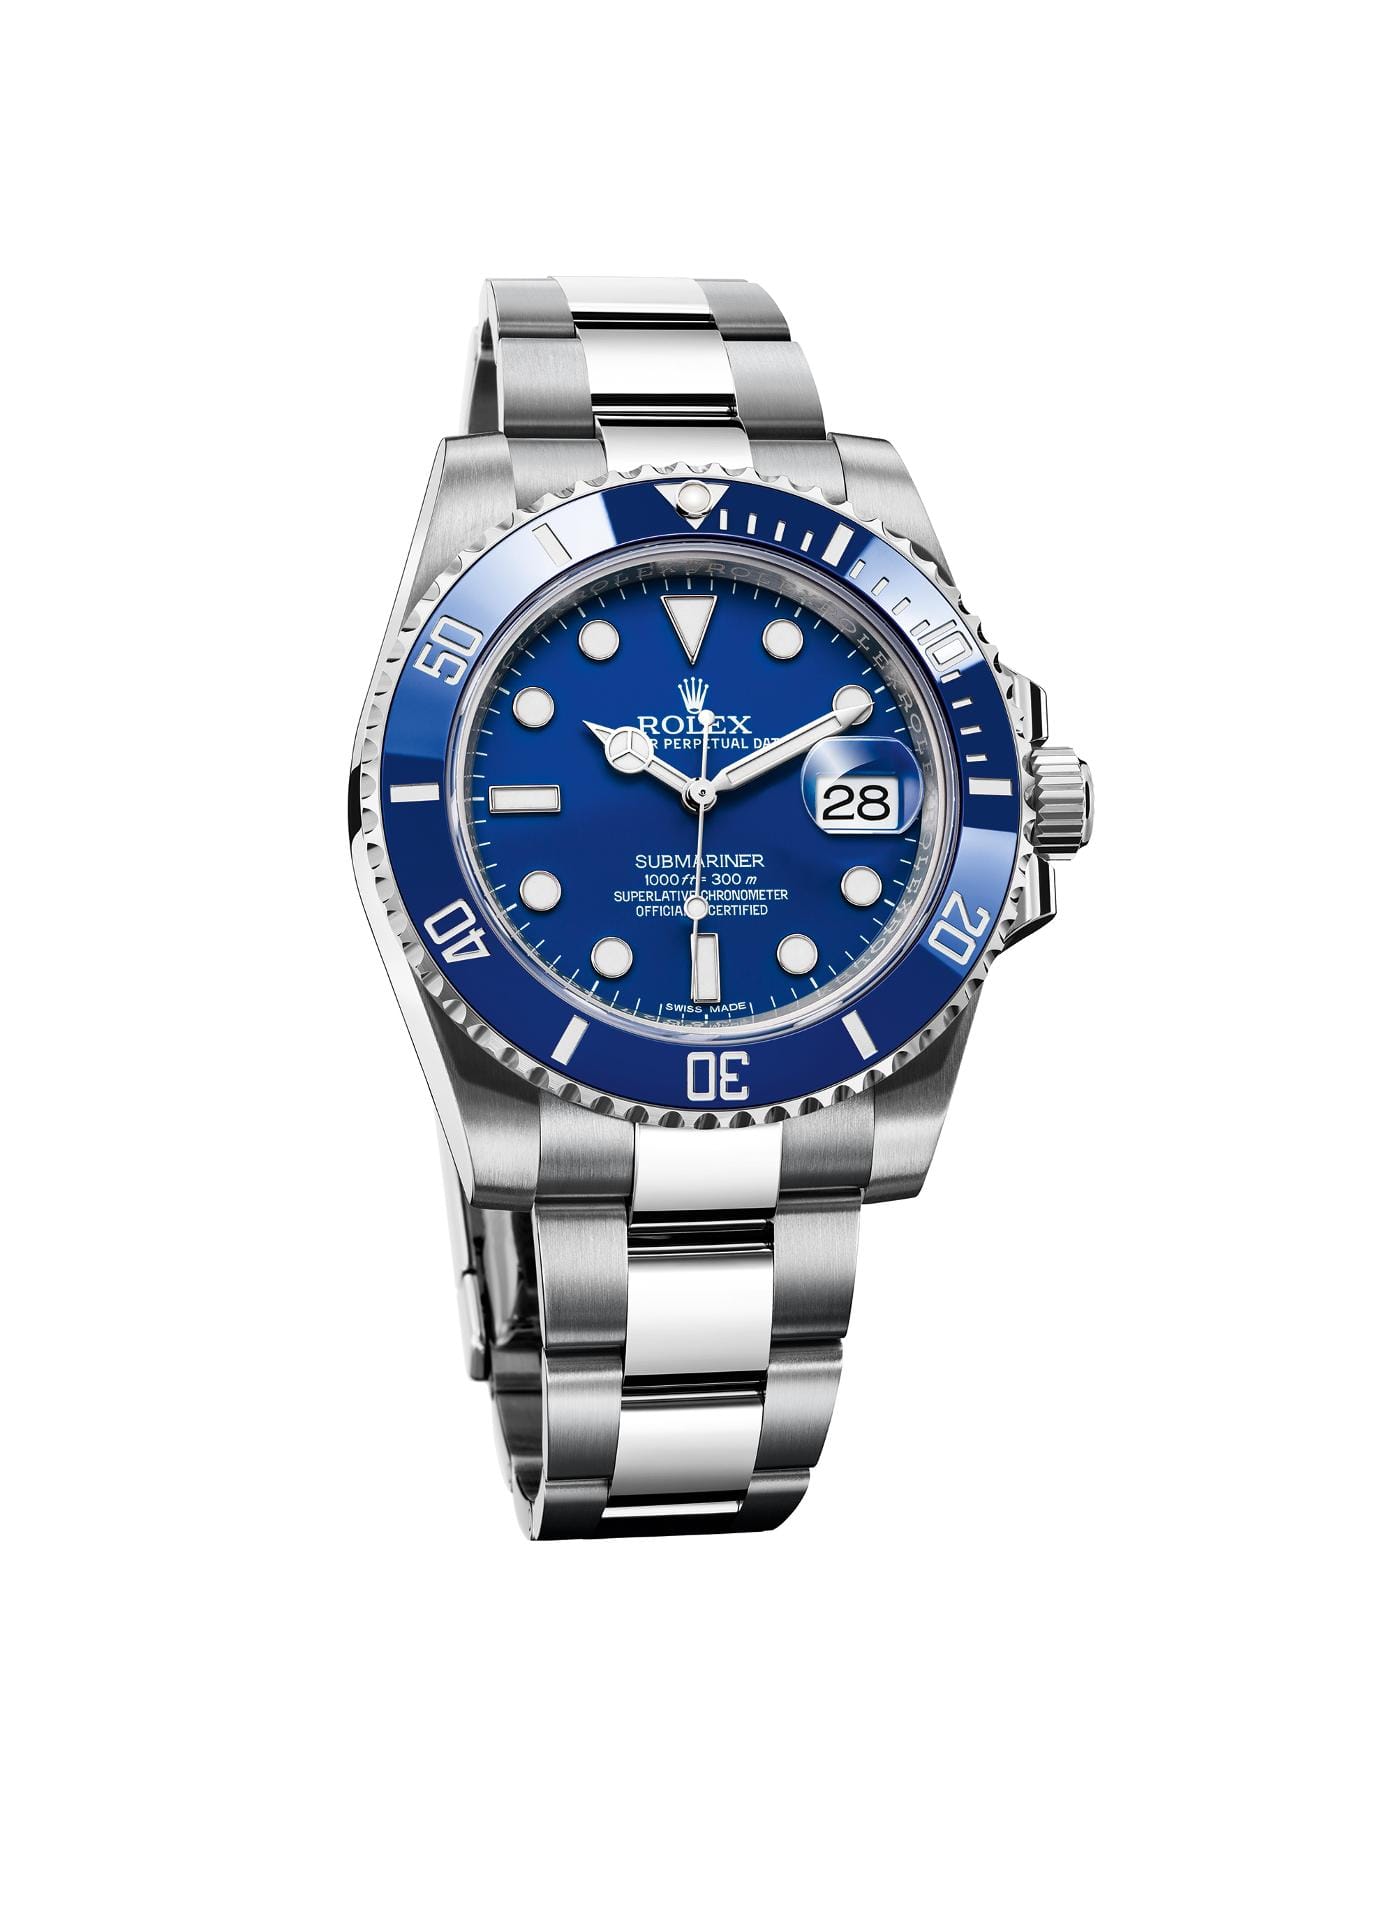 Vor allem auch die Tophersteller wie Rolex bieten schicke Uhren wie diese Submariner Date, die aus Weißgold rund 33.600 Euro kostet. Typisch ist bei diesen Taucheruhren, dass die Drehlünette enenfalls in Blau gehalten ist.